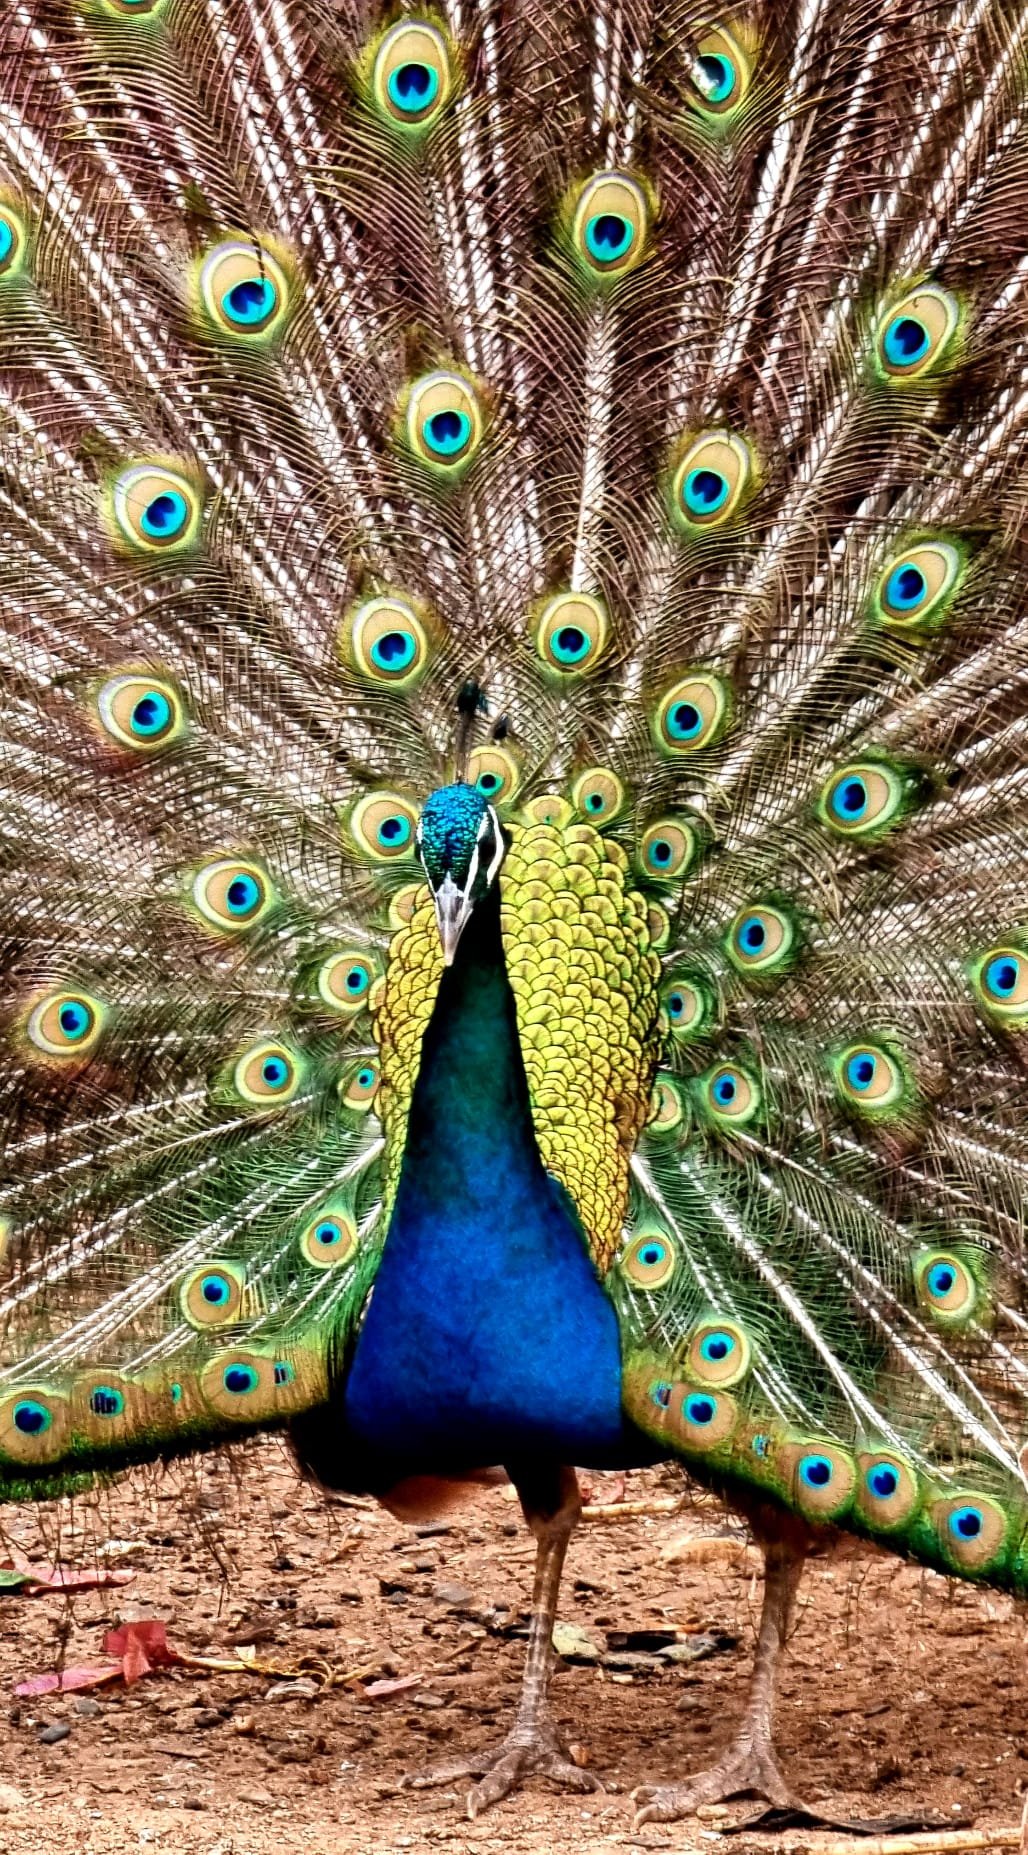 peacock in Morocco.jpg